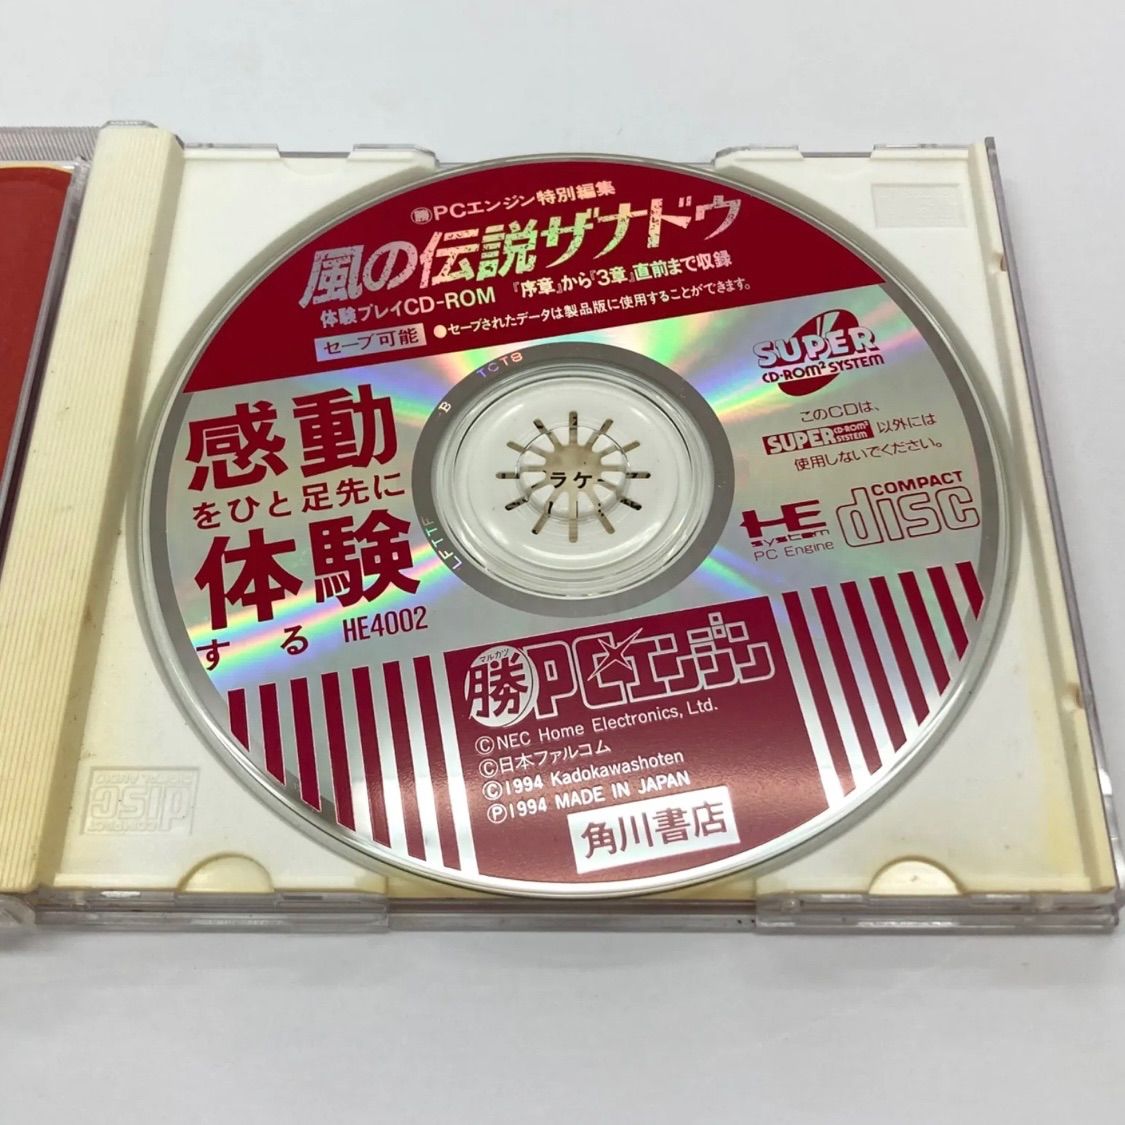 非売品 風の伝説ザナドゥ 体験CD-ROM付 ゲームガイド PCエンジン 角川 